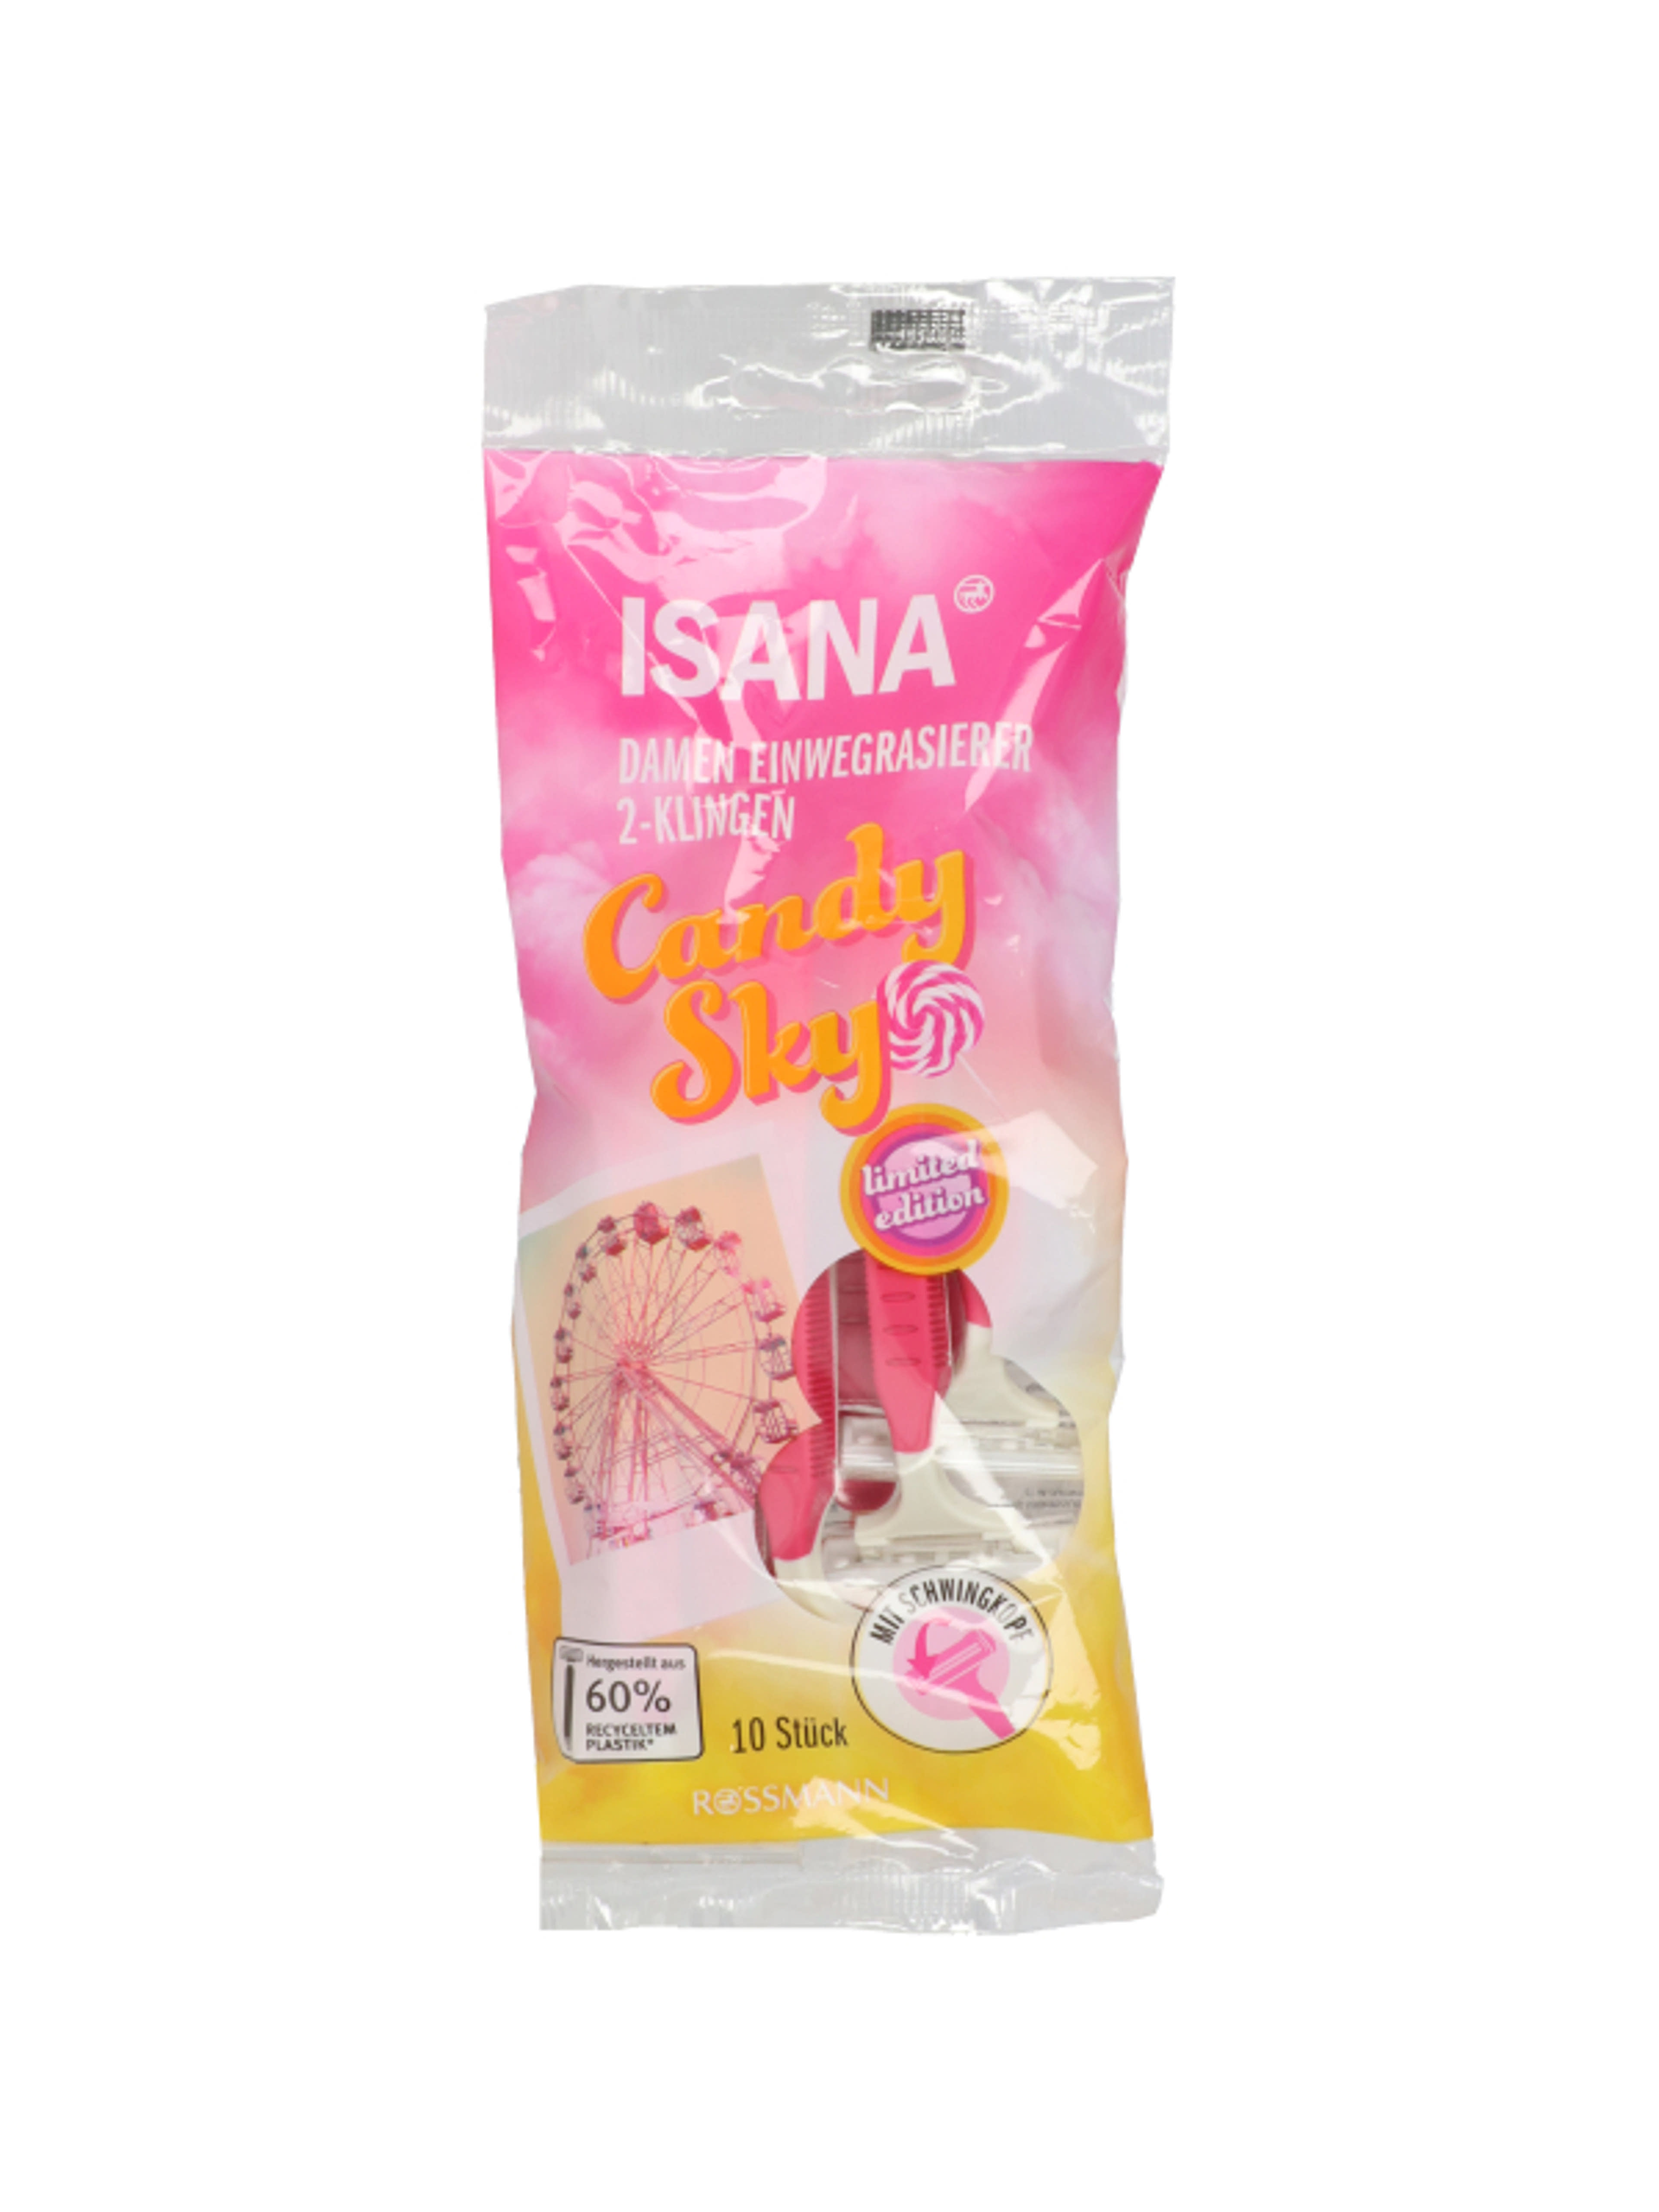 Isana Candy Sky eldobható női borotva, 2 pengés - 10 db-1